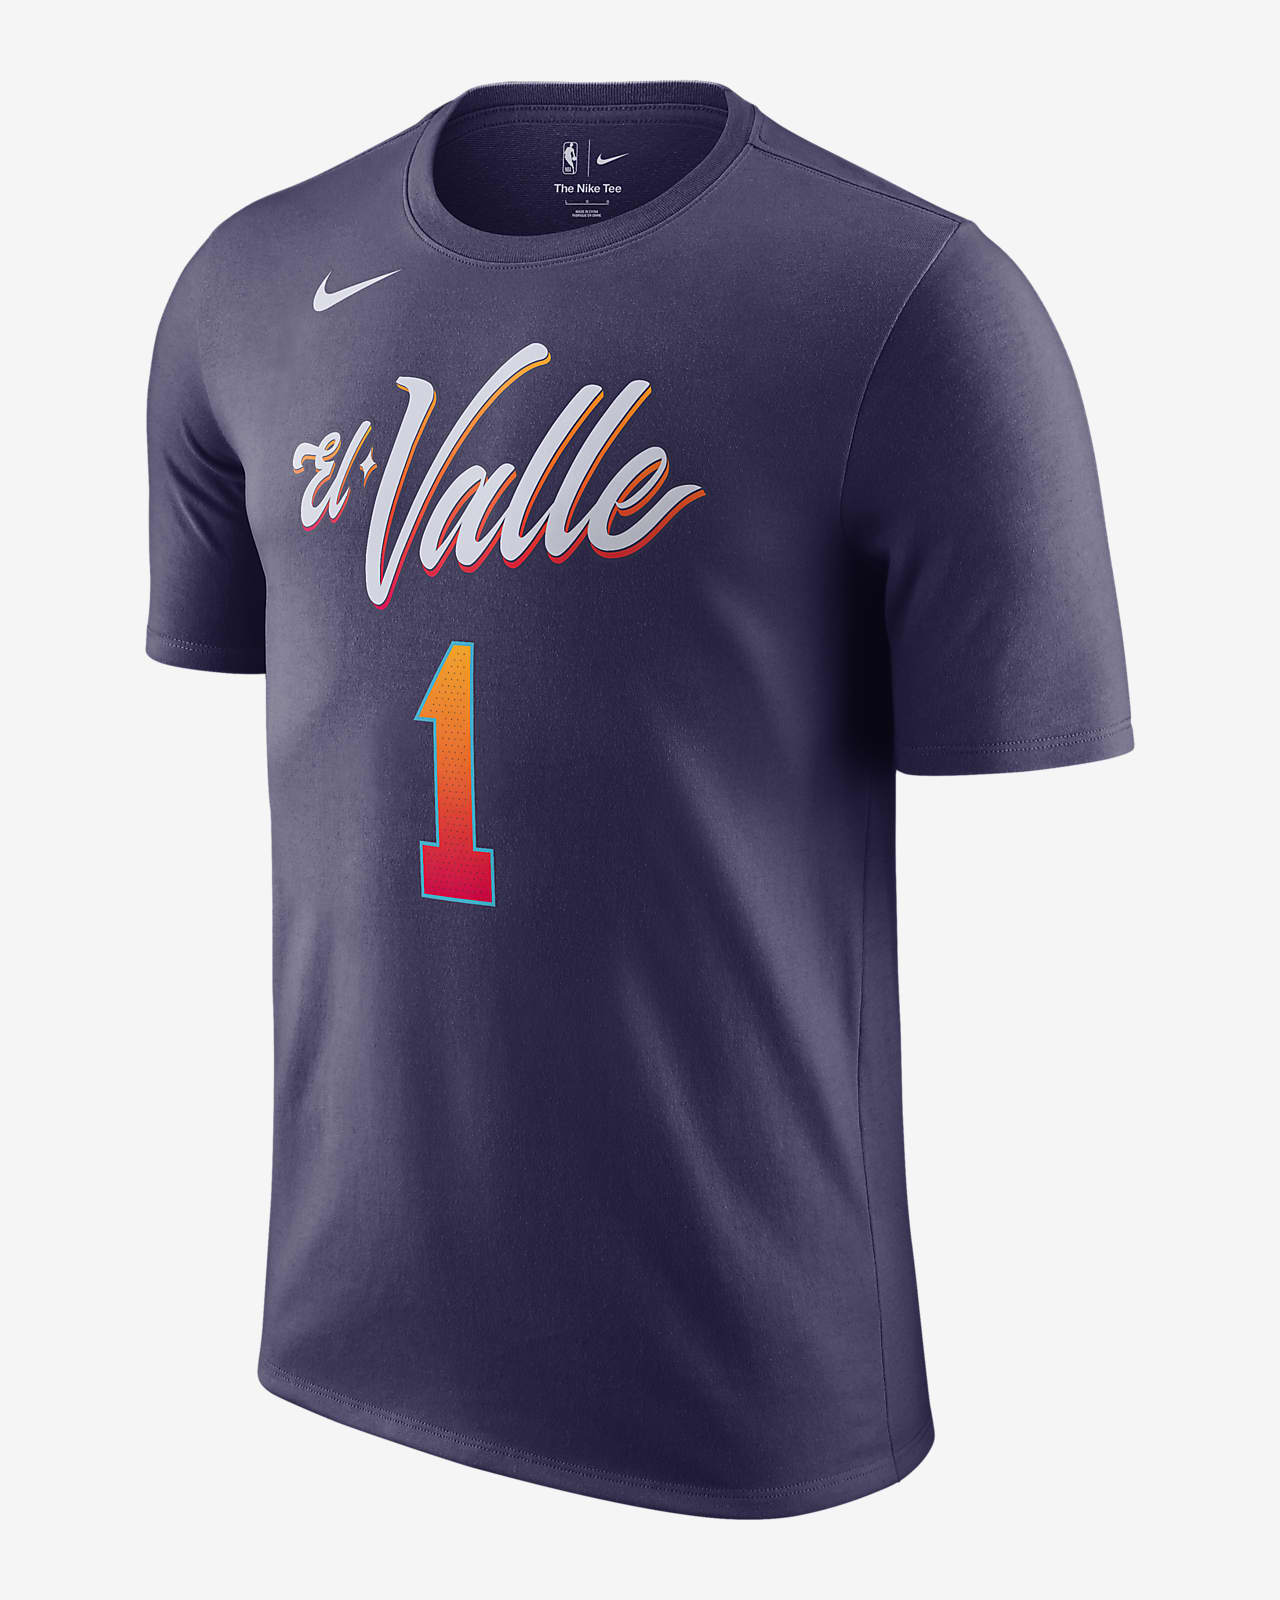 Ανδρικό T-Shirt Nike NBA Devin Booker Φοίνιξ Σανς City Edition